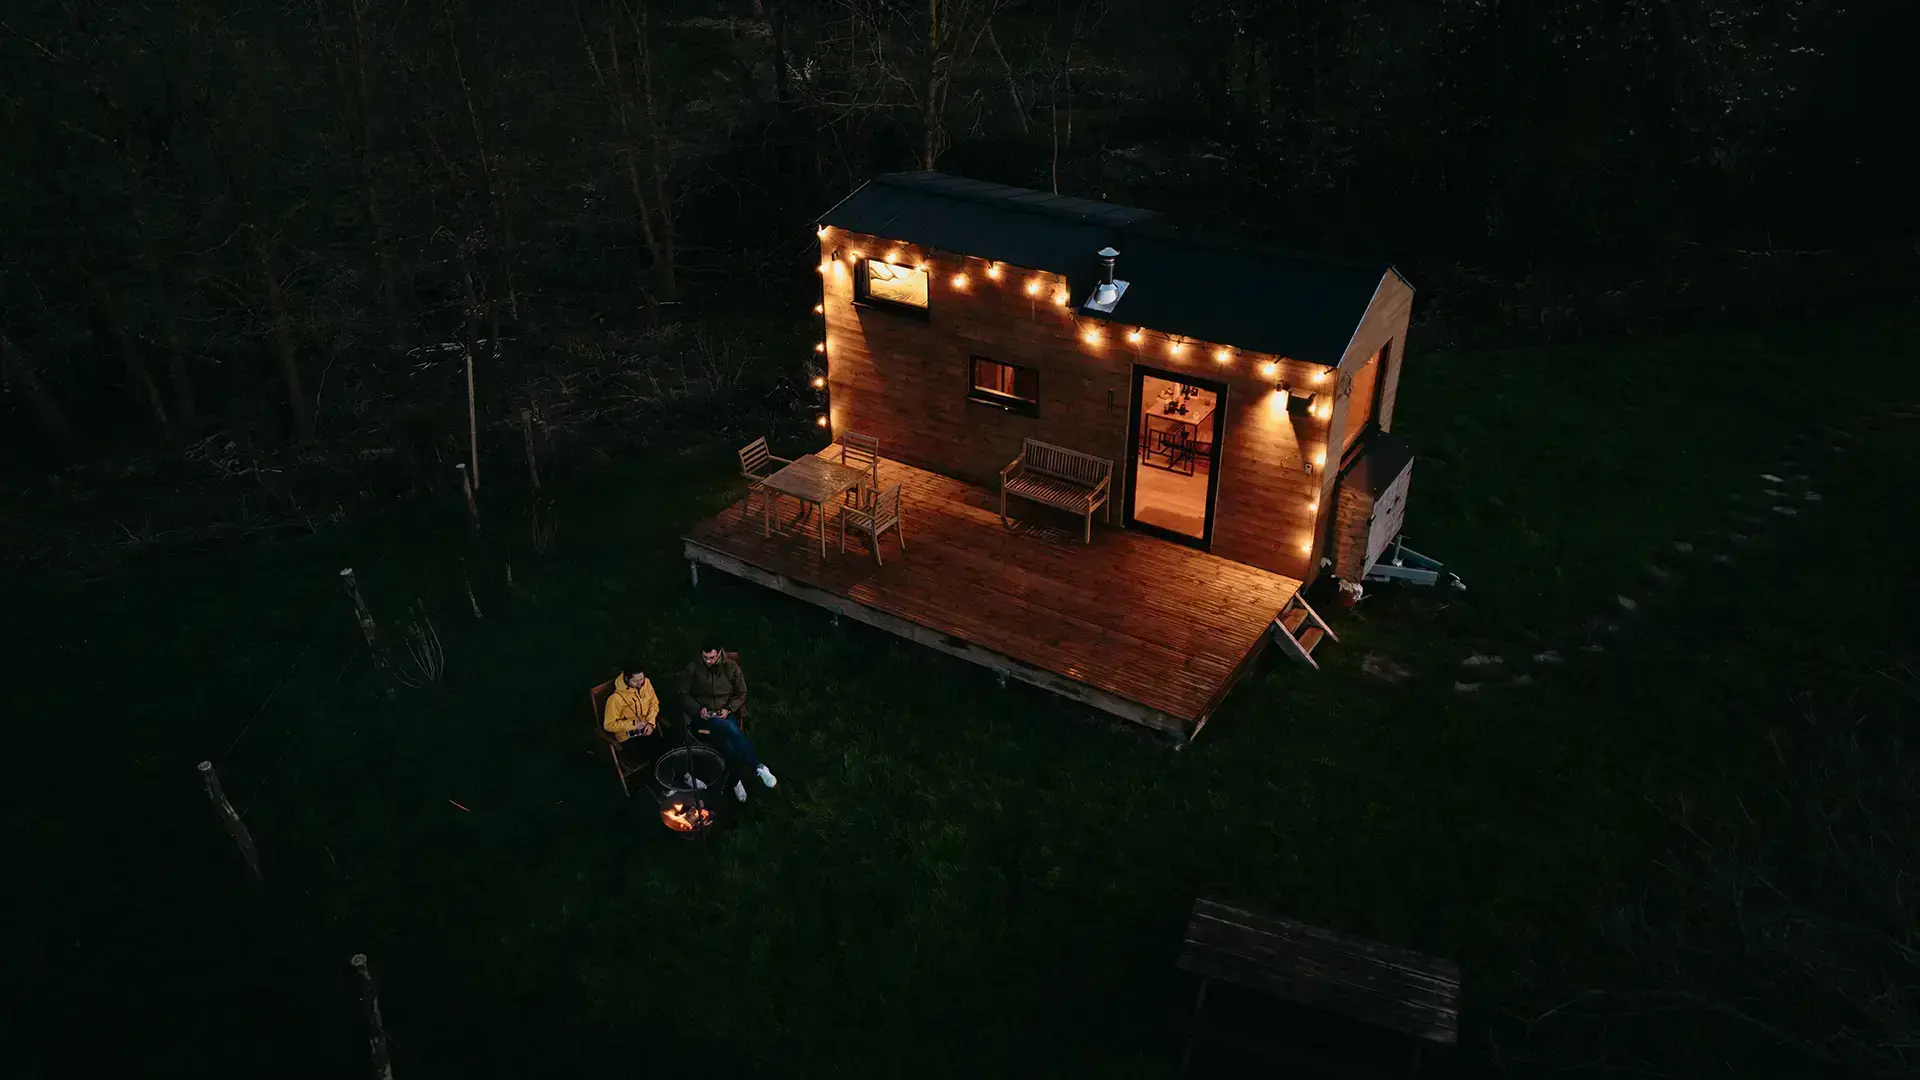 Tiny house en bois à Liège en Belgique à la tombée de la nuit. La photo est prise au drone